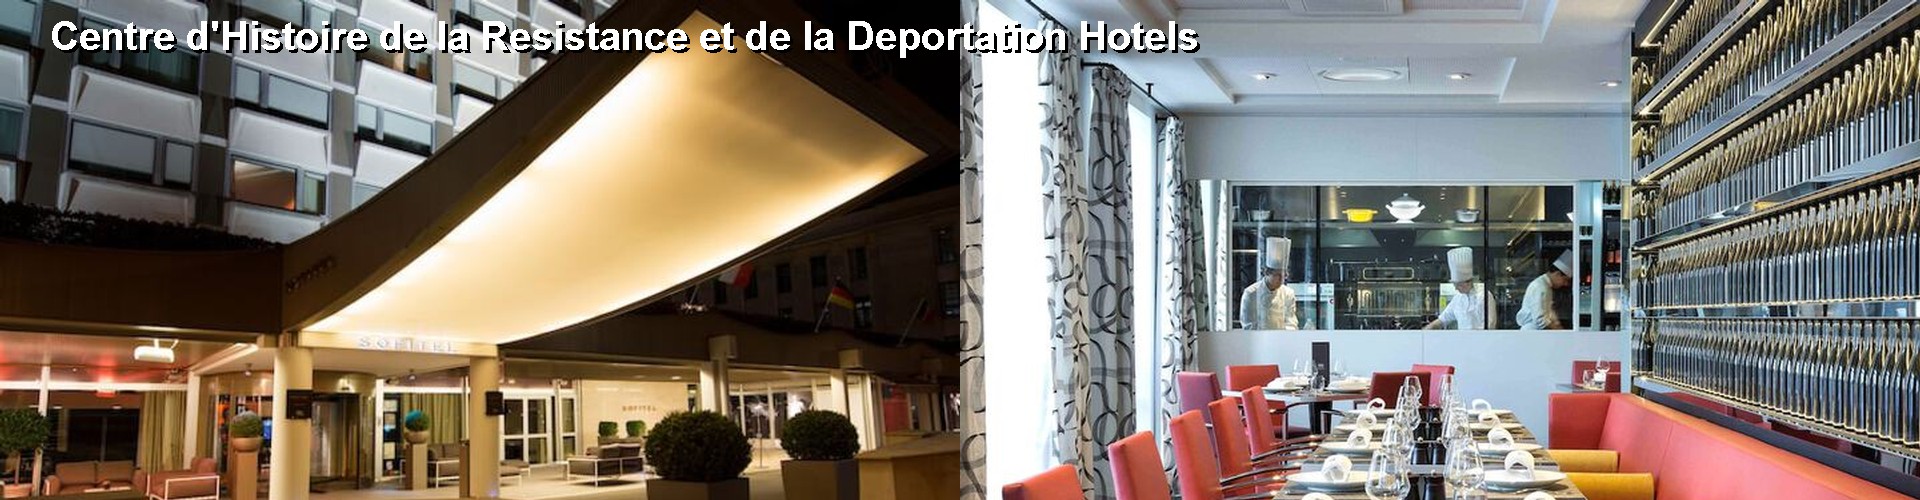 5 Best Hotels near Centre d'Histoire de la Resistance et de la Deportation